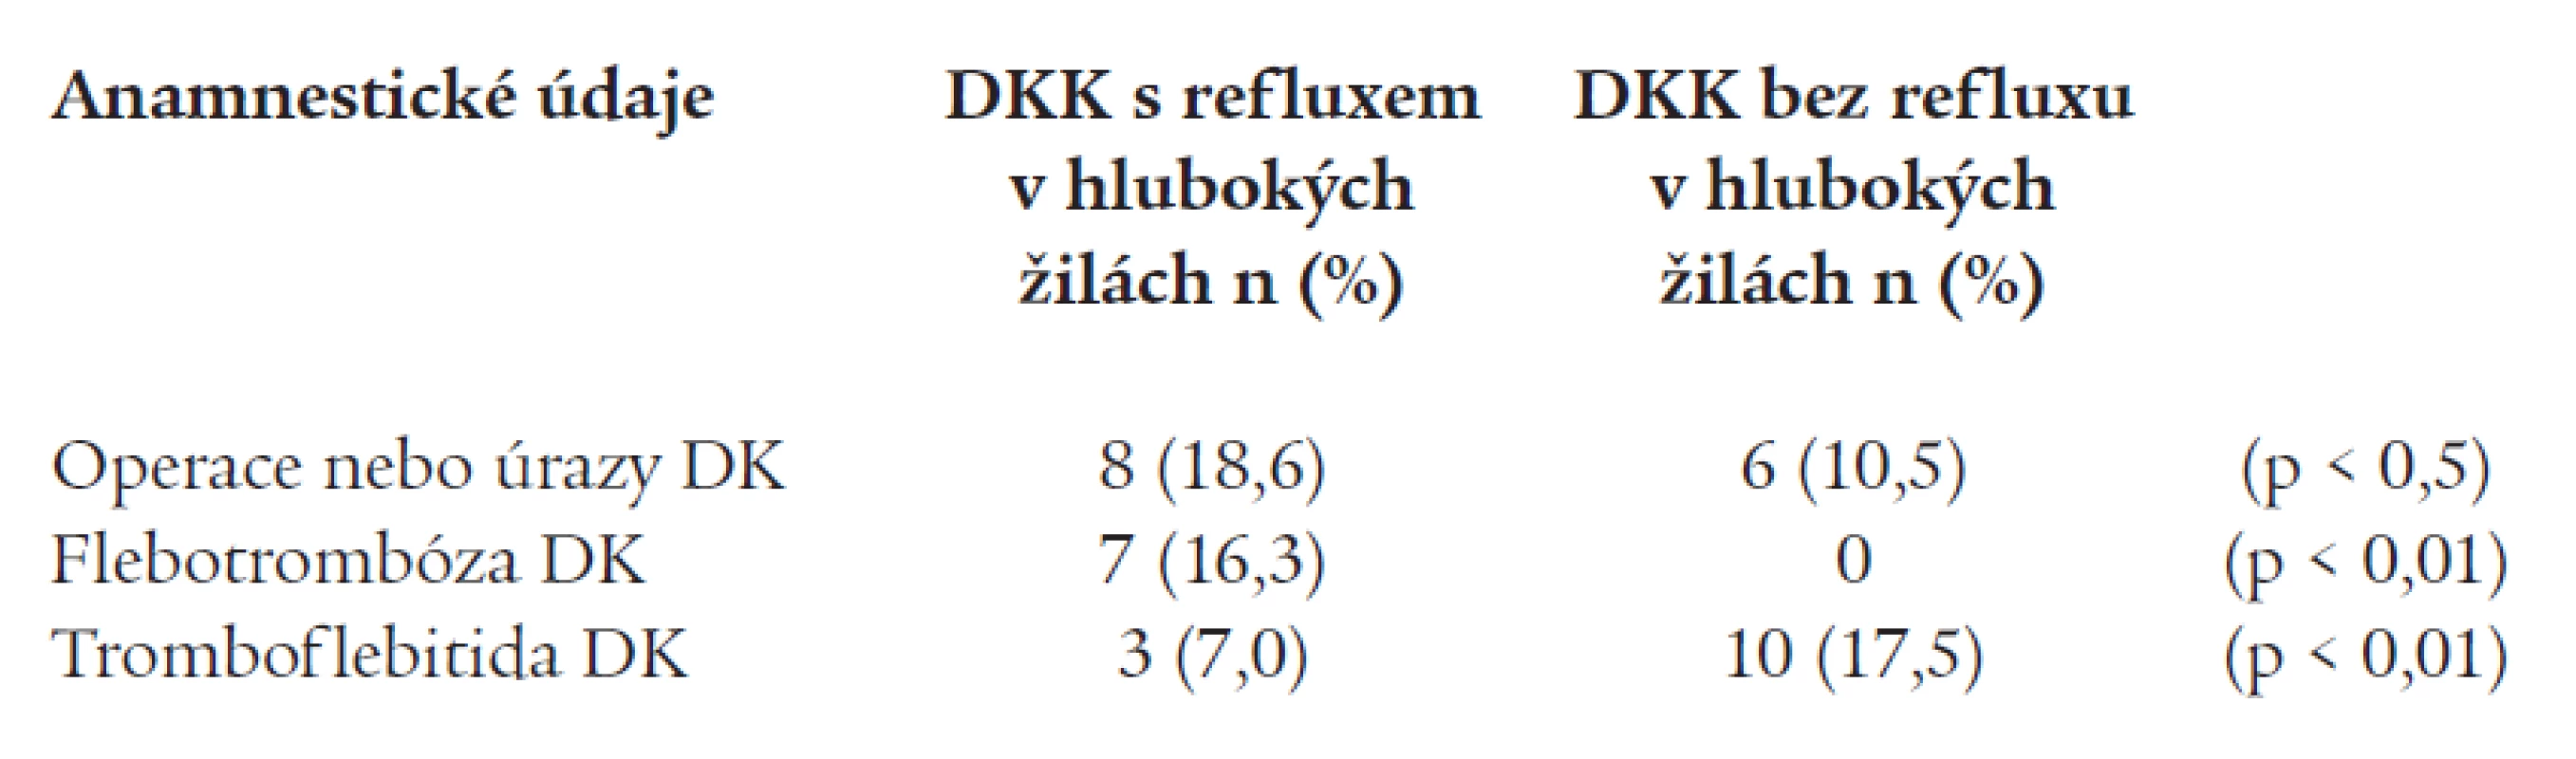 Výskyt refluxu v hlubokých žilách DKK podle některých anamnestických údajů.